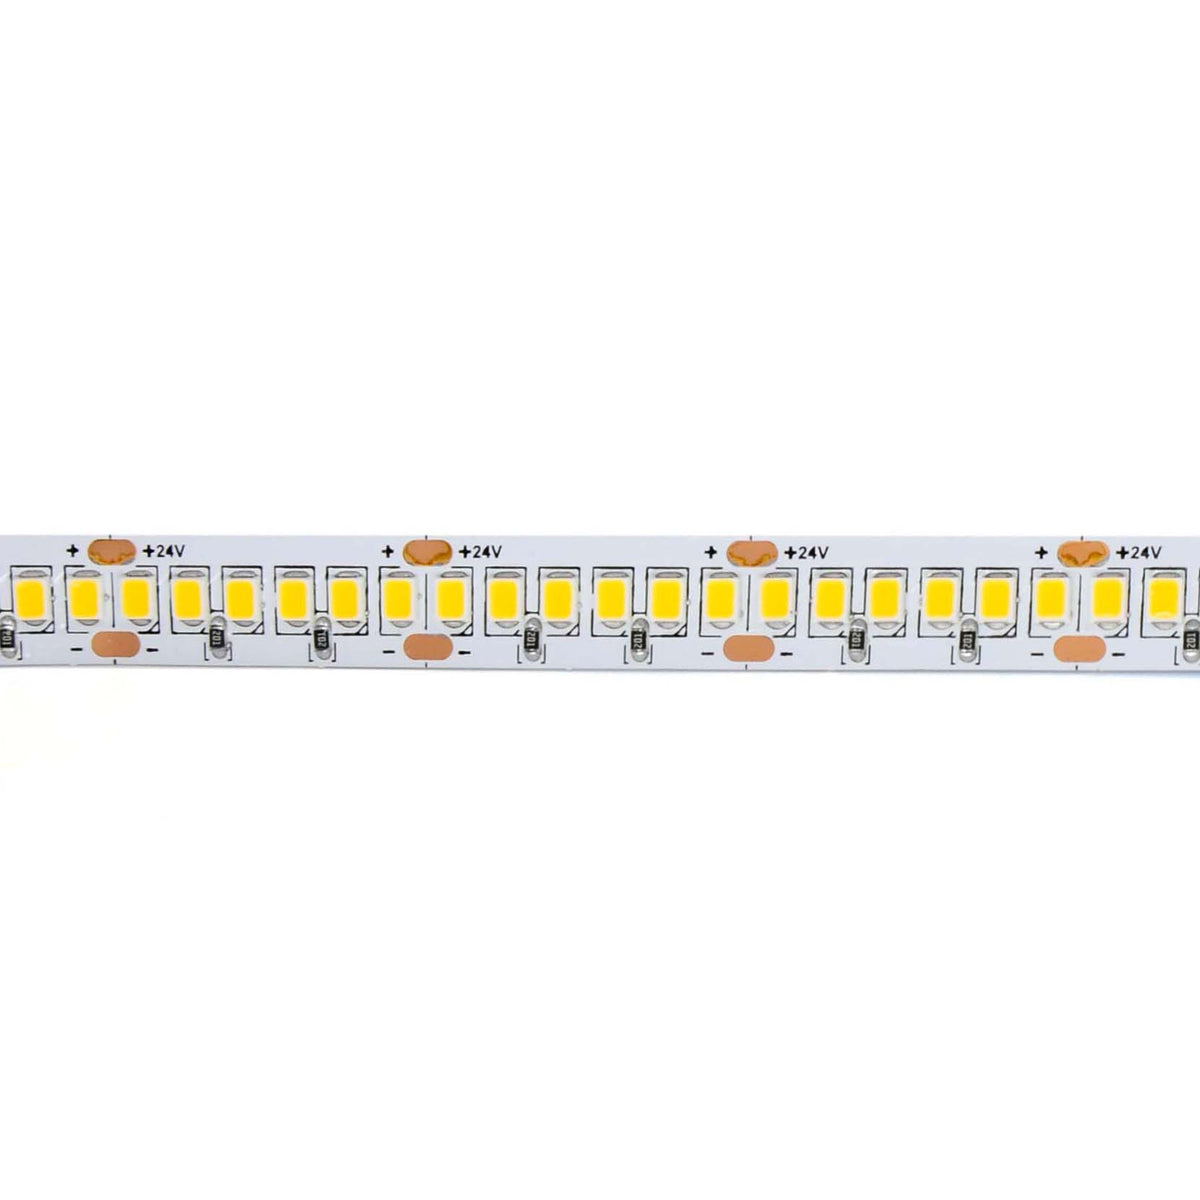 G.W.S. LED LED Strip Lights 24V IP20 2835 5M 240 LEDs/M LED Strip Light